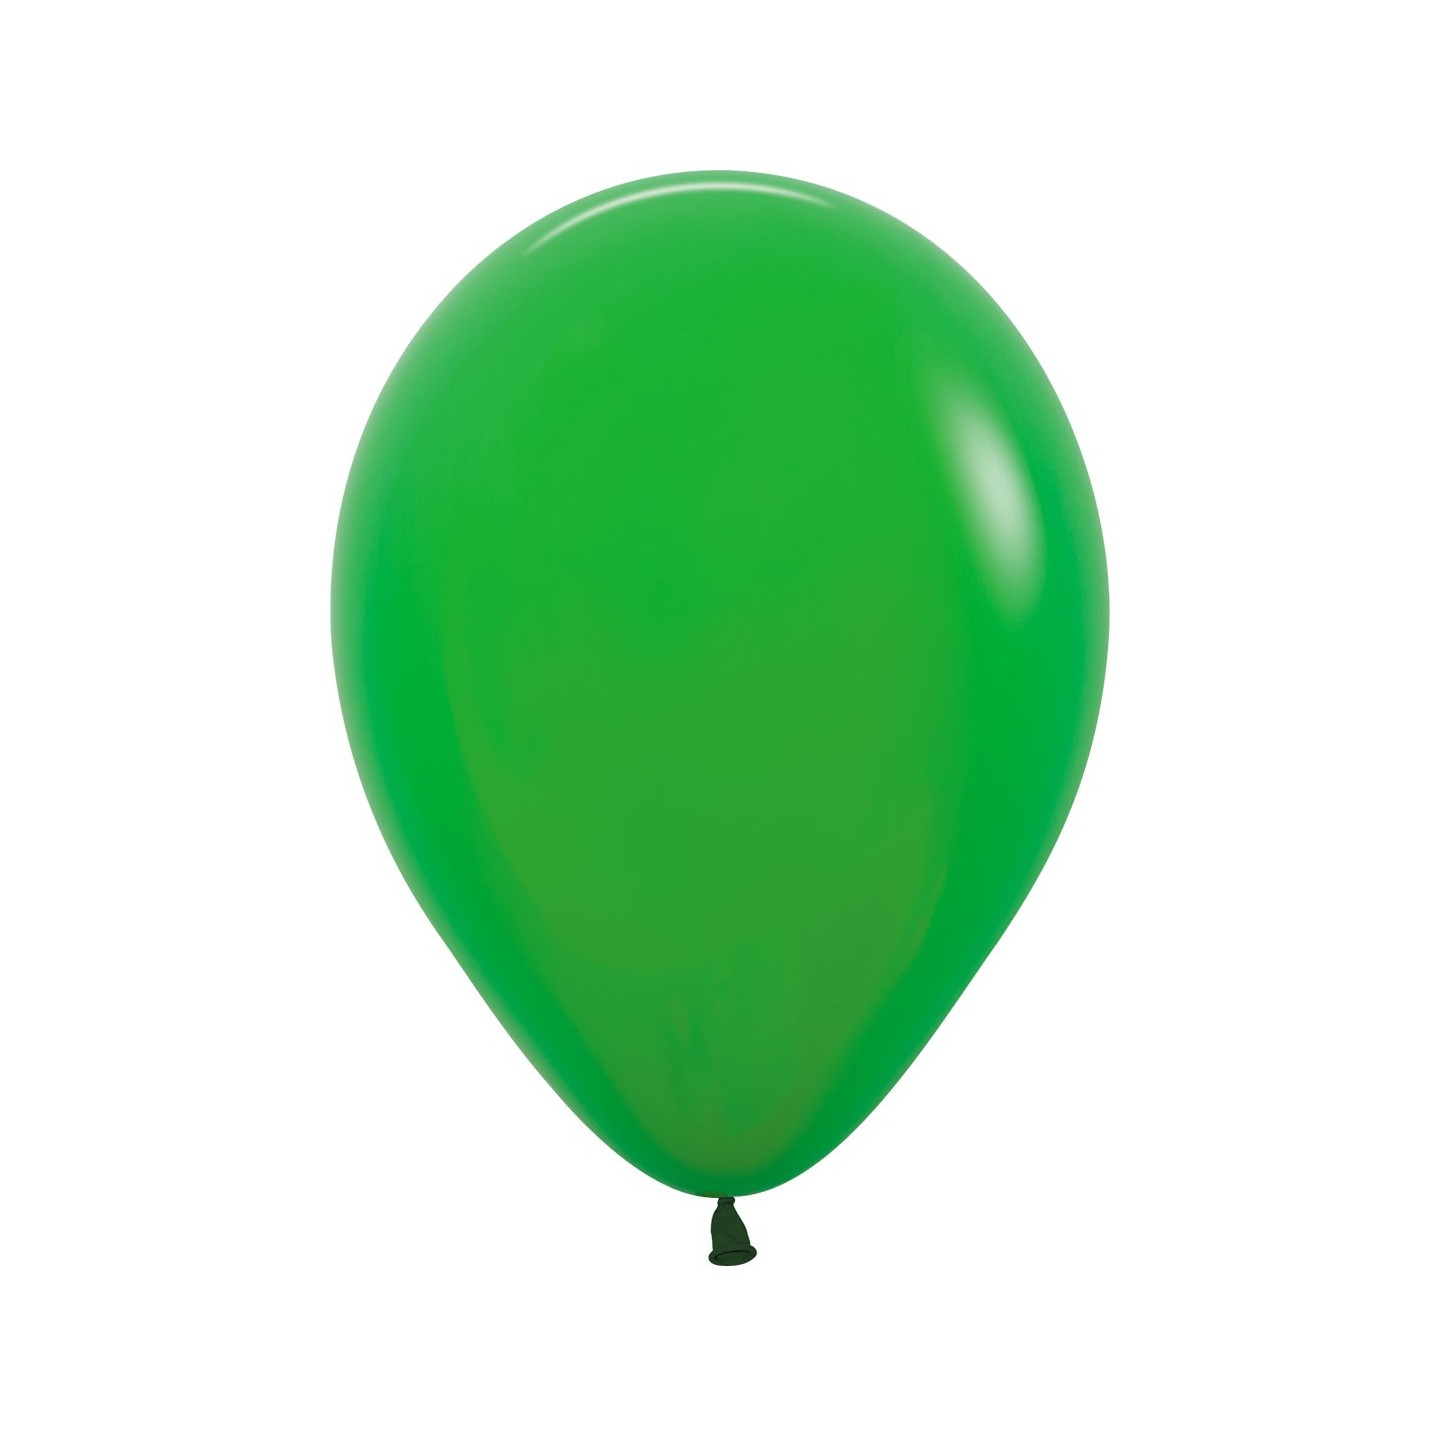 sempertex ballonnen klaver groen shamrock green